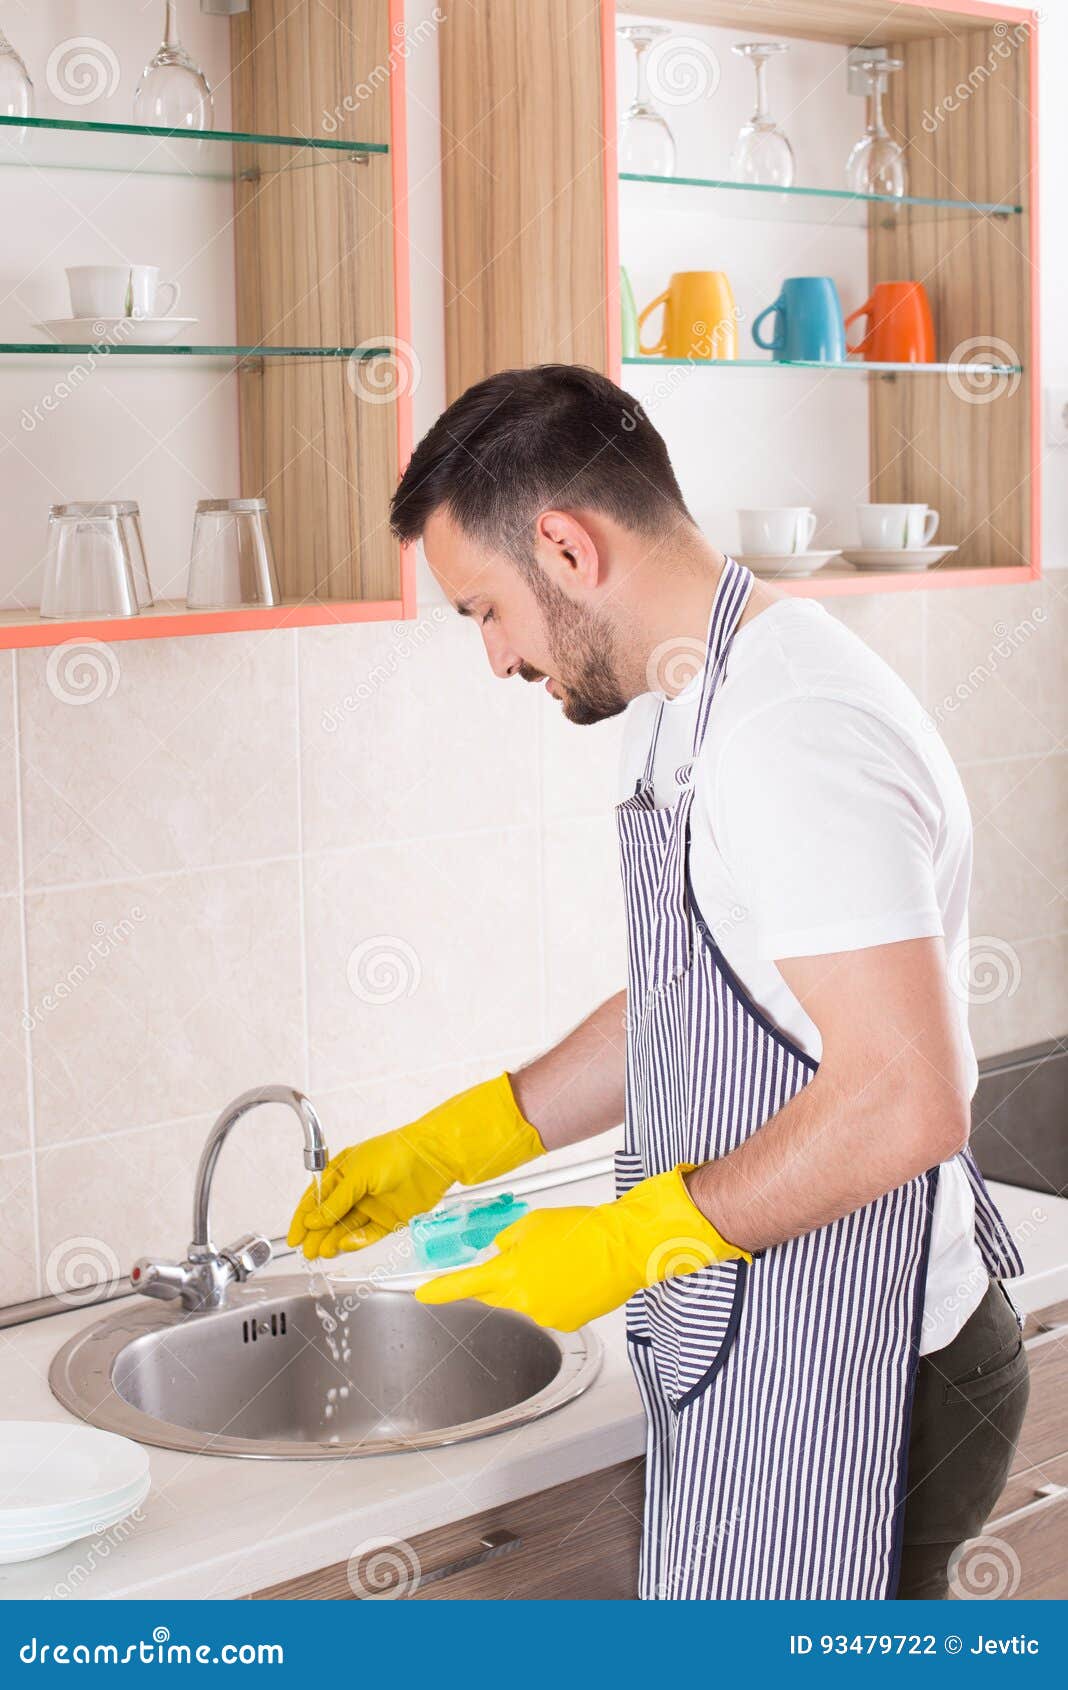 Парень моет посуду. Мужчина моет посуду. Человек моющий посуду. Мужчина моющий посуду. Муж моет посуду.